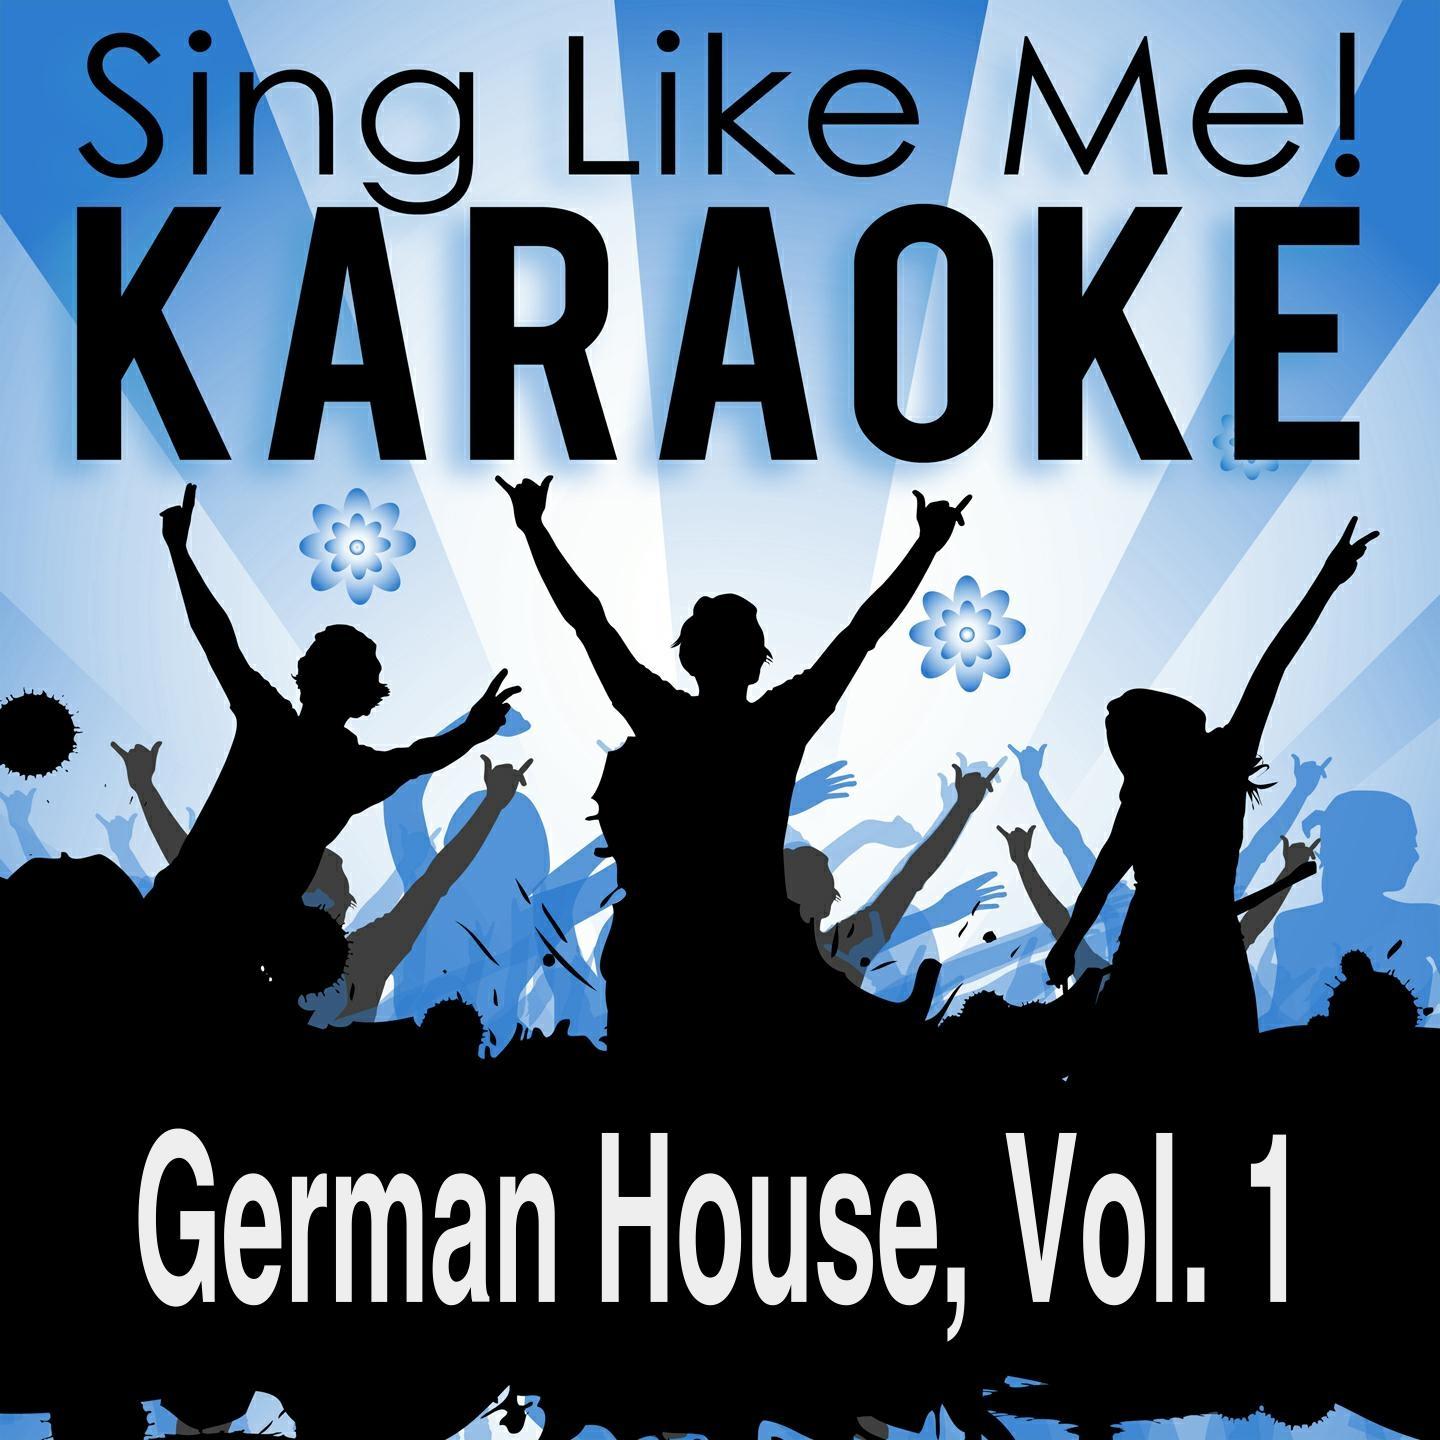 German House, Vol. 1 (Karaoke Version)